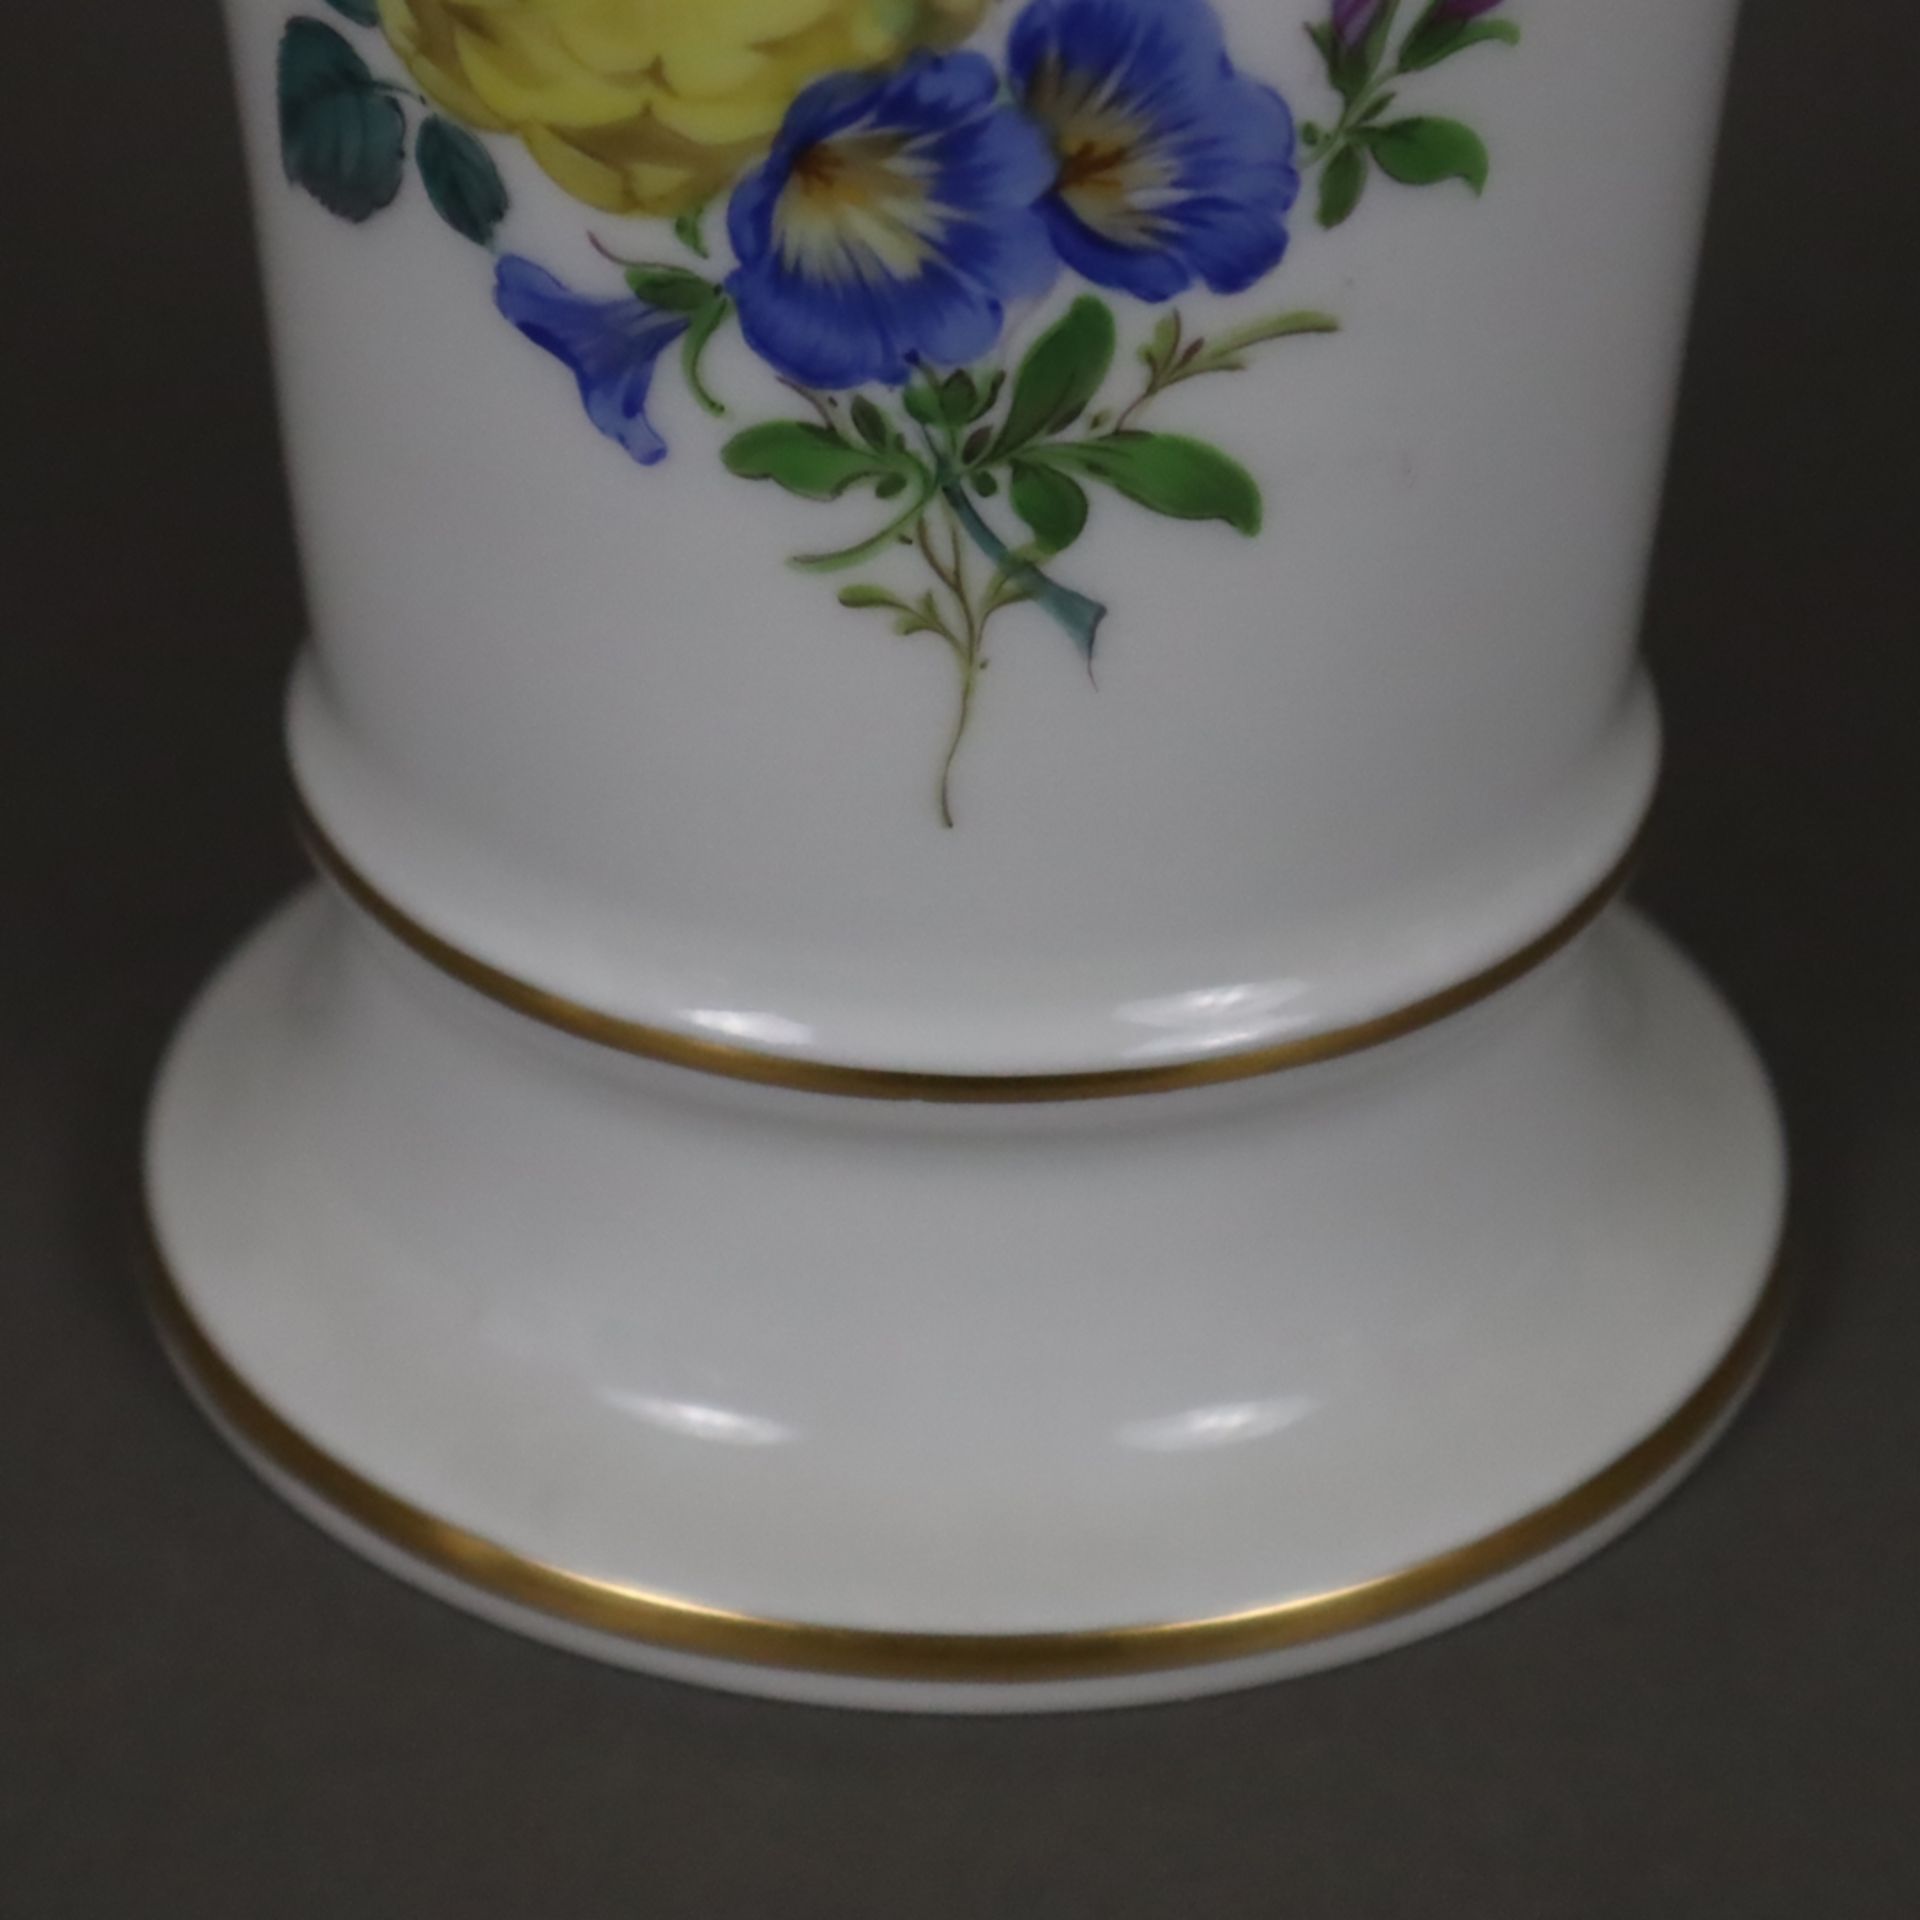 Trichtervase - Meissen, 20. Jh., Porzellan, Blumendekor, Goldakzente, Form "Neuer Ausschnitt", poly - Image 5 of 6